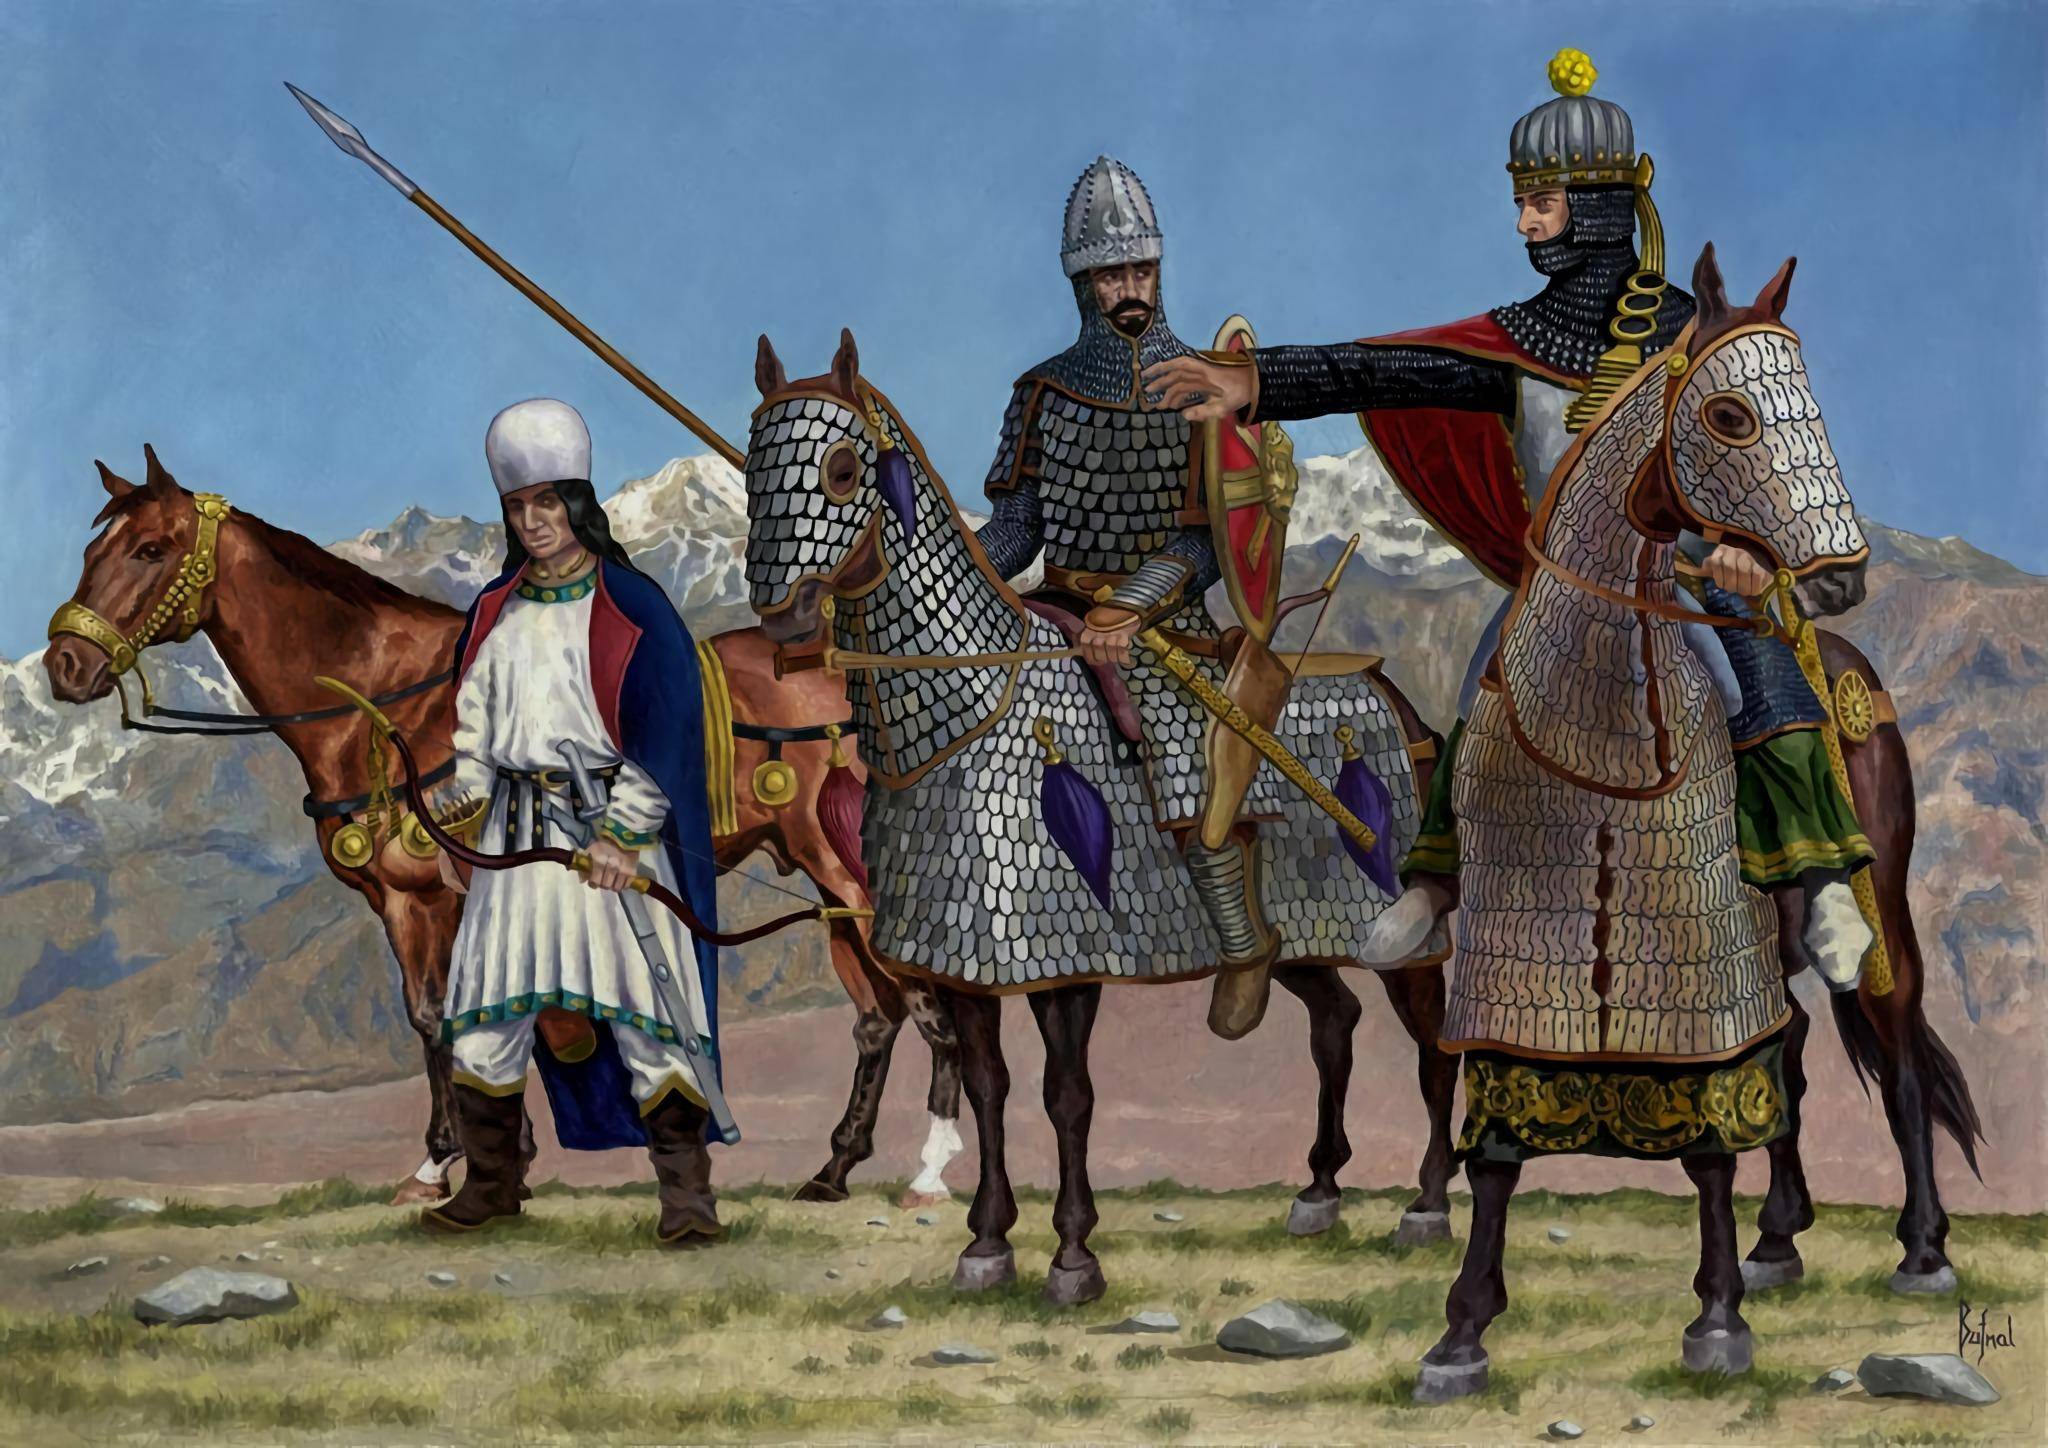 波斯骑兵埃德萨之战的过程在此不做赘述,总之罗马军团遭遇惨败